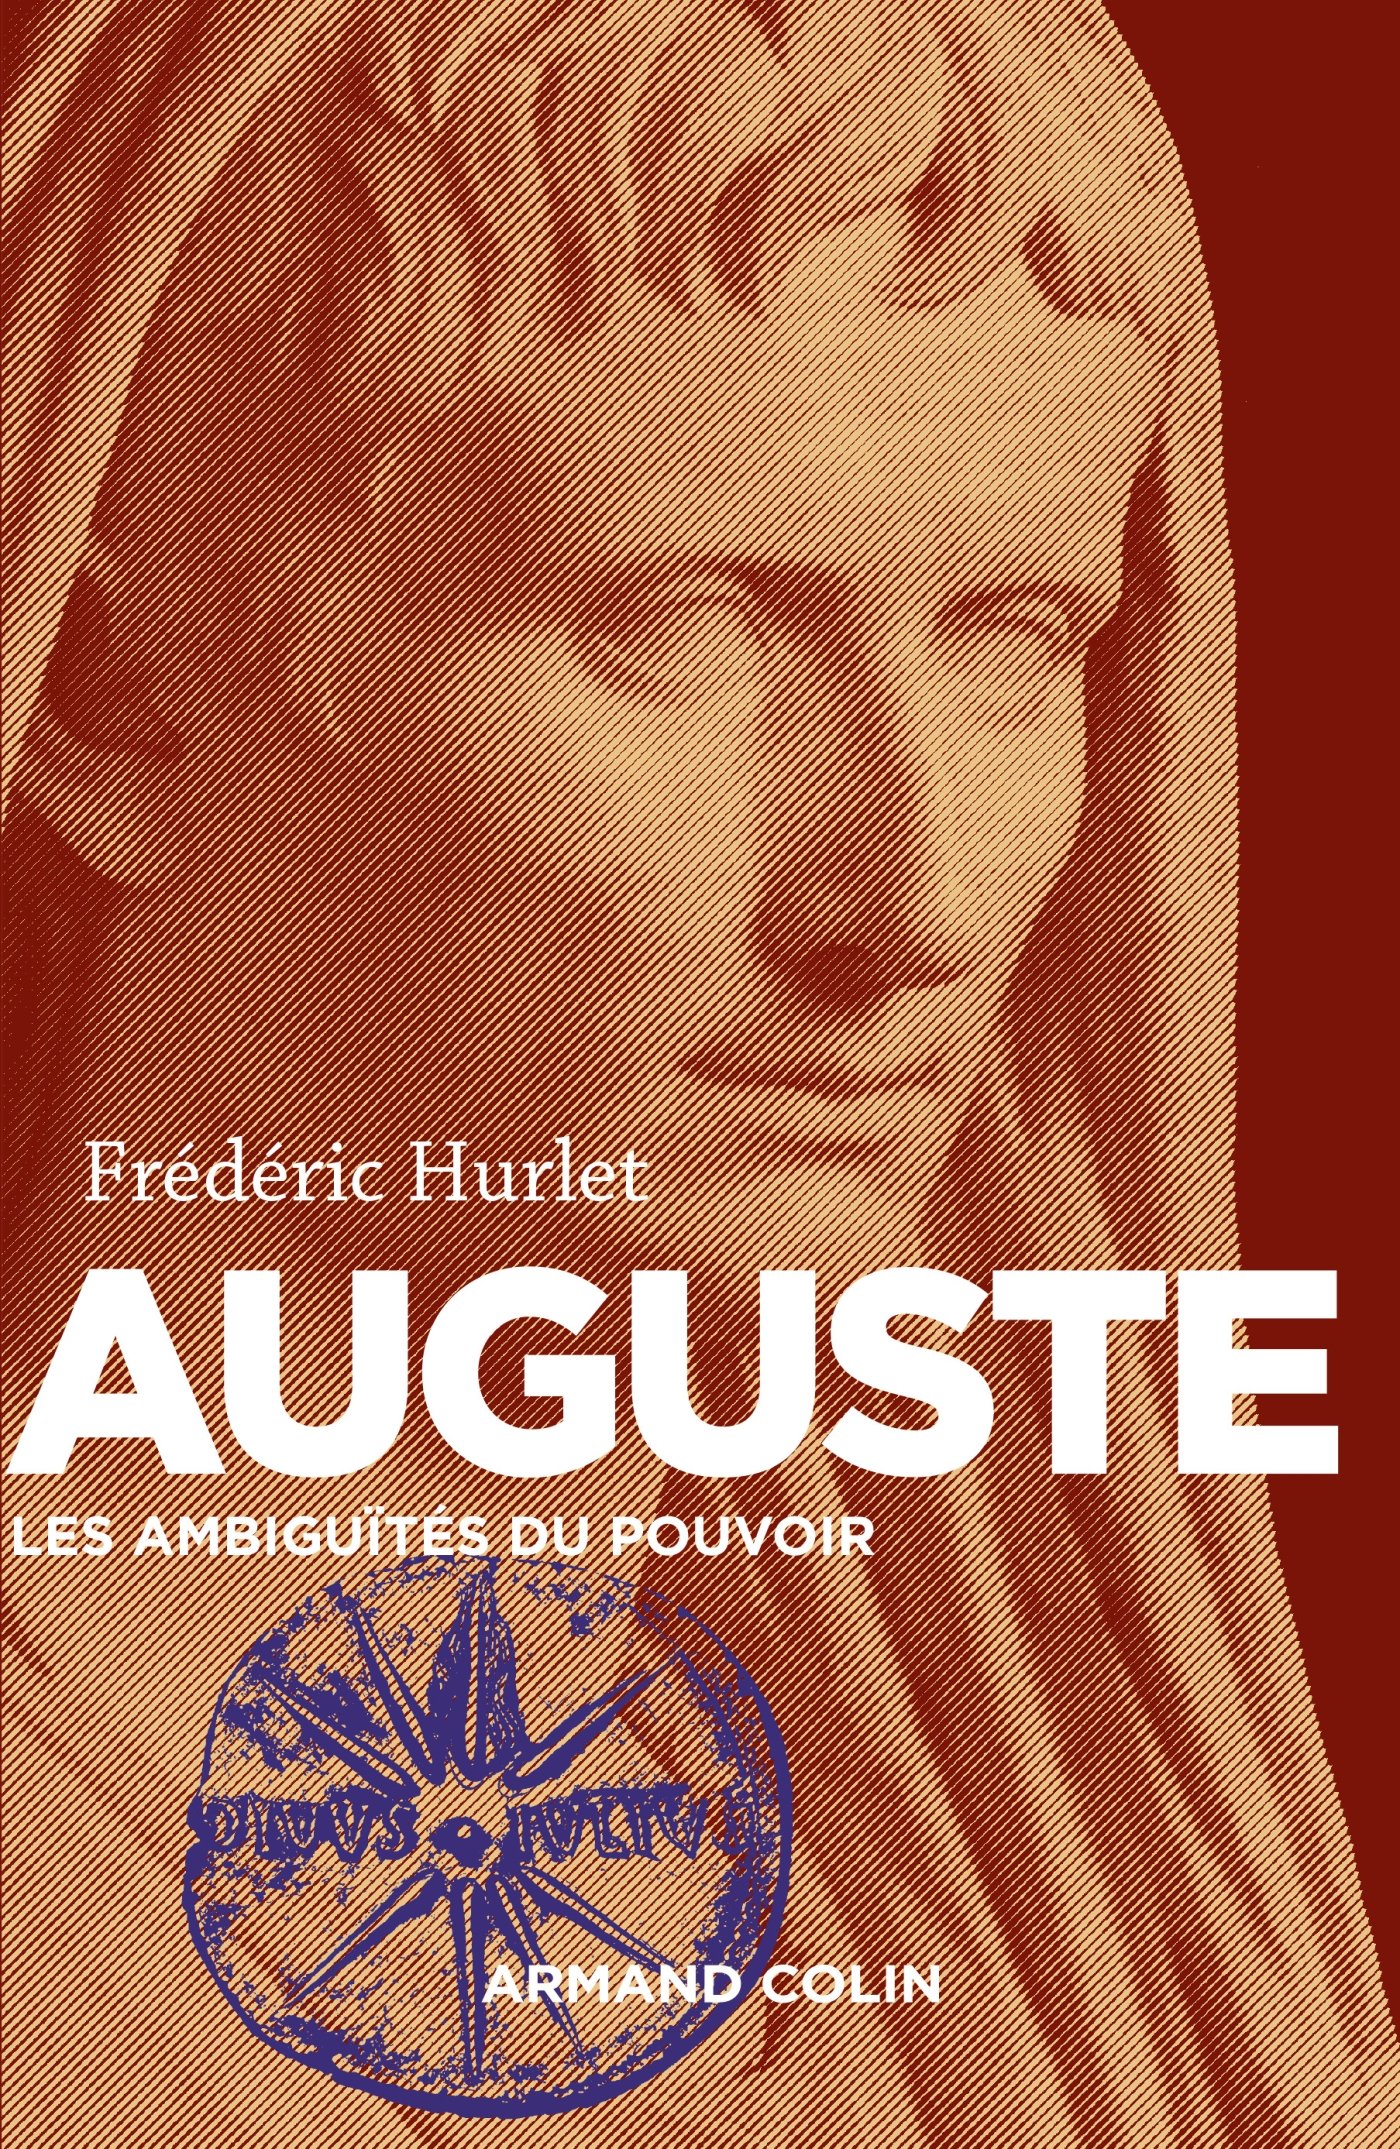 Auguste. Les ambiguïtés du pouvoir, 2015, 296 p.